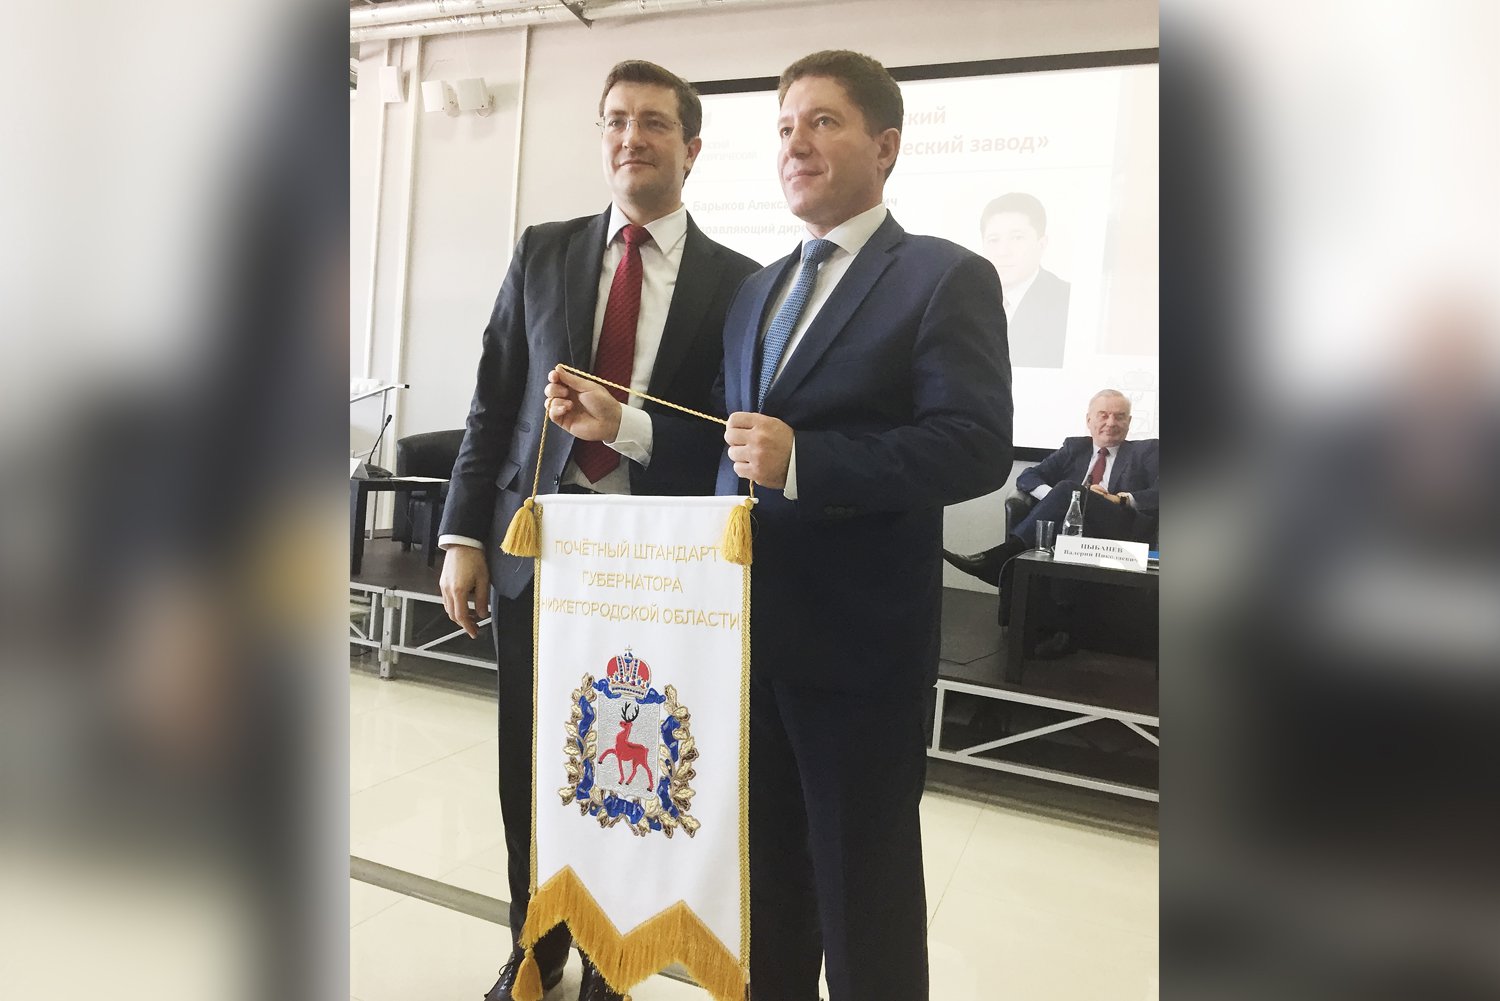 ВМЗ награжден Почетным штандартом губернатора Нижегородской области